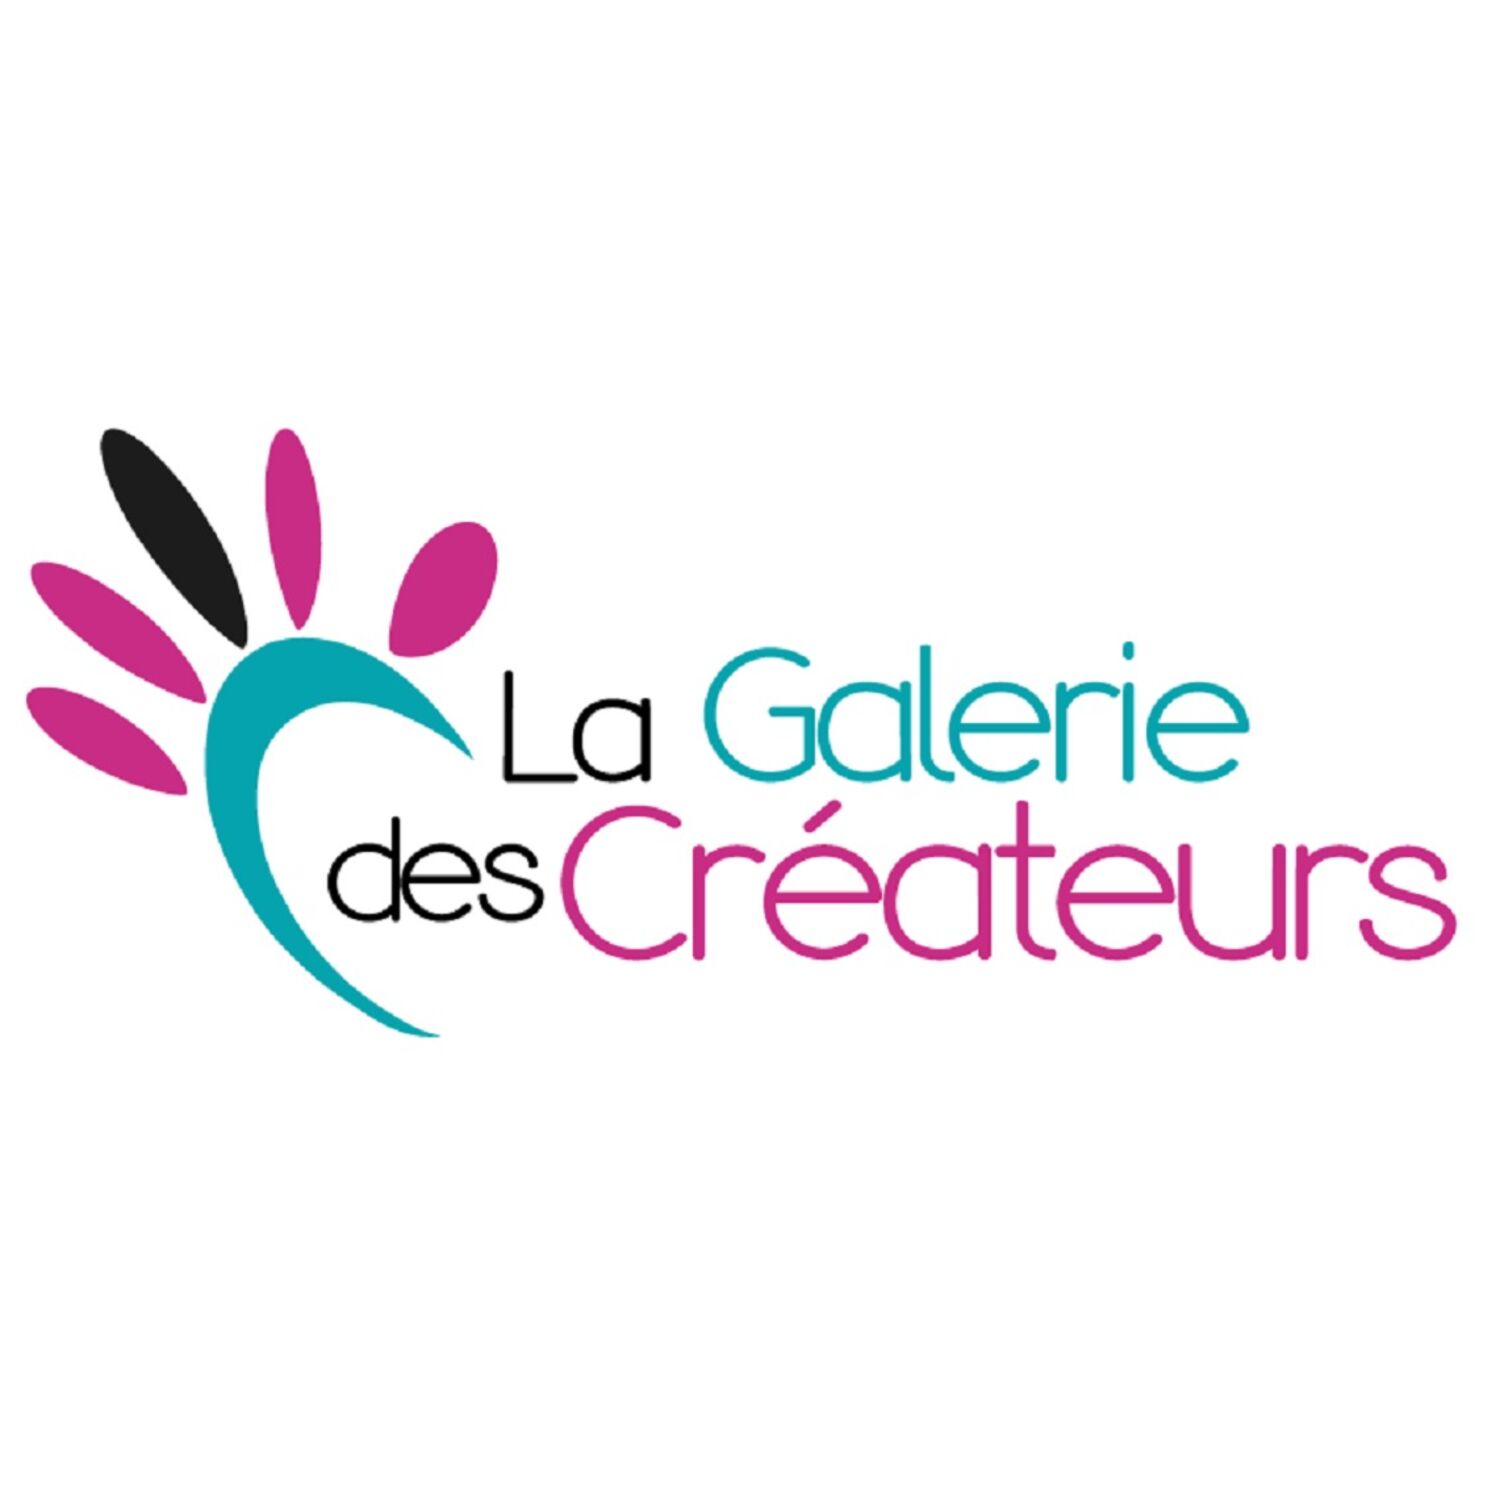 1ère édition d'un marché de créateurs à Concarneau le 13 novembre